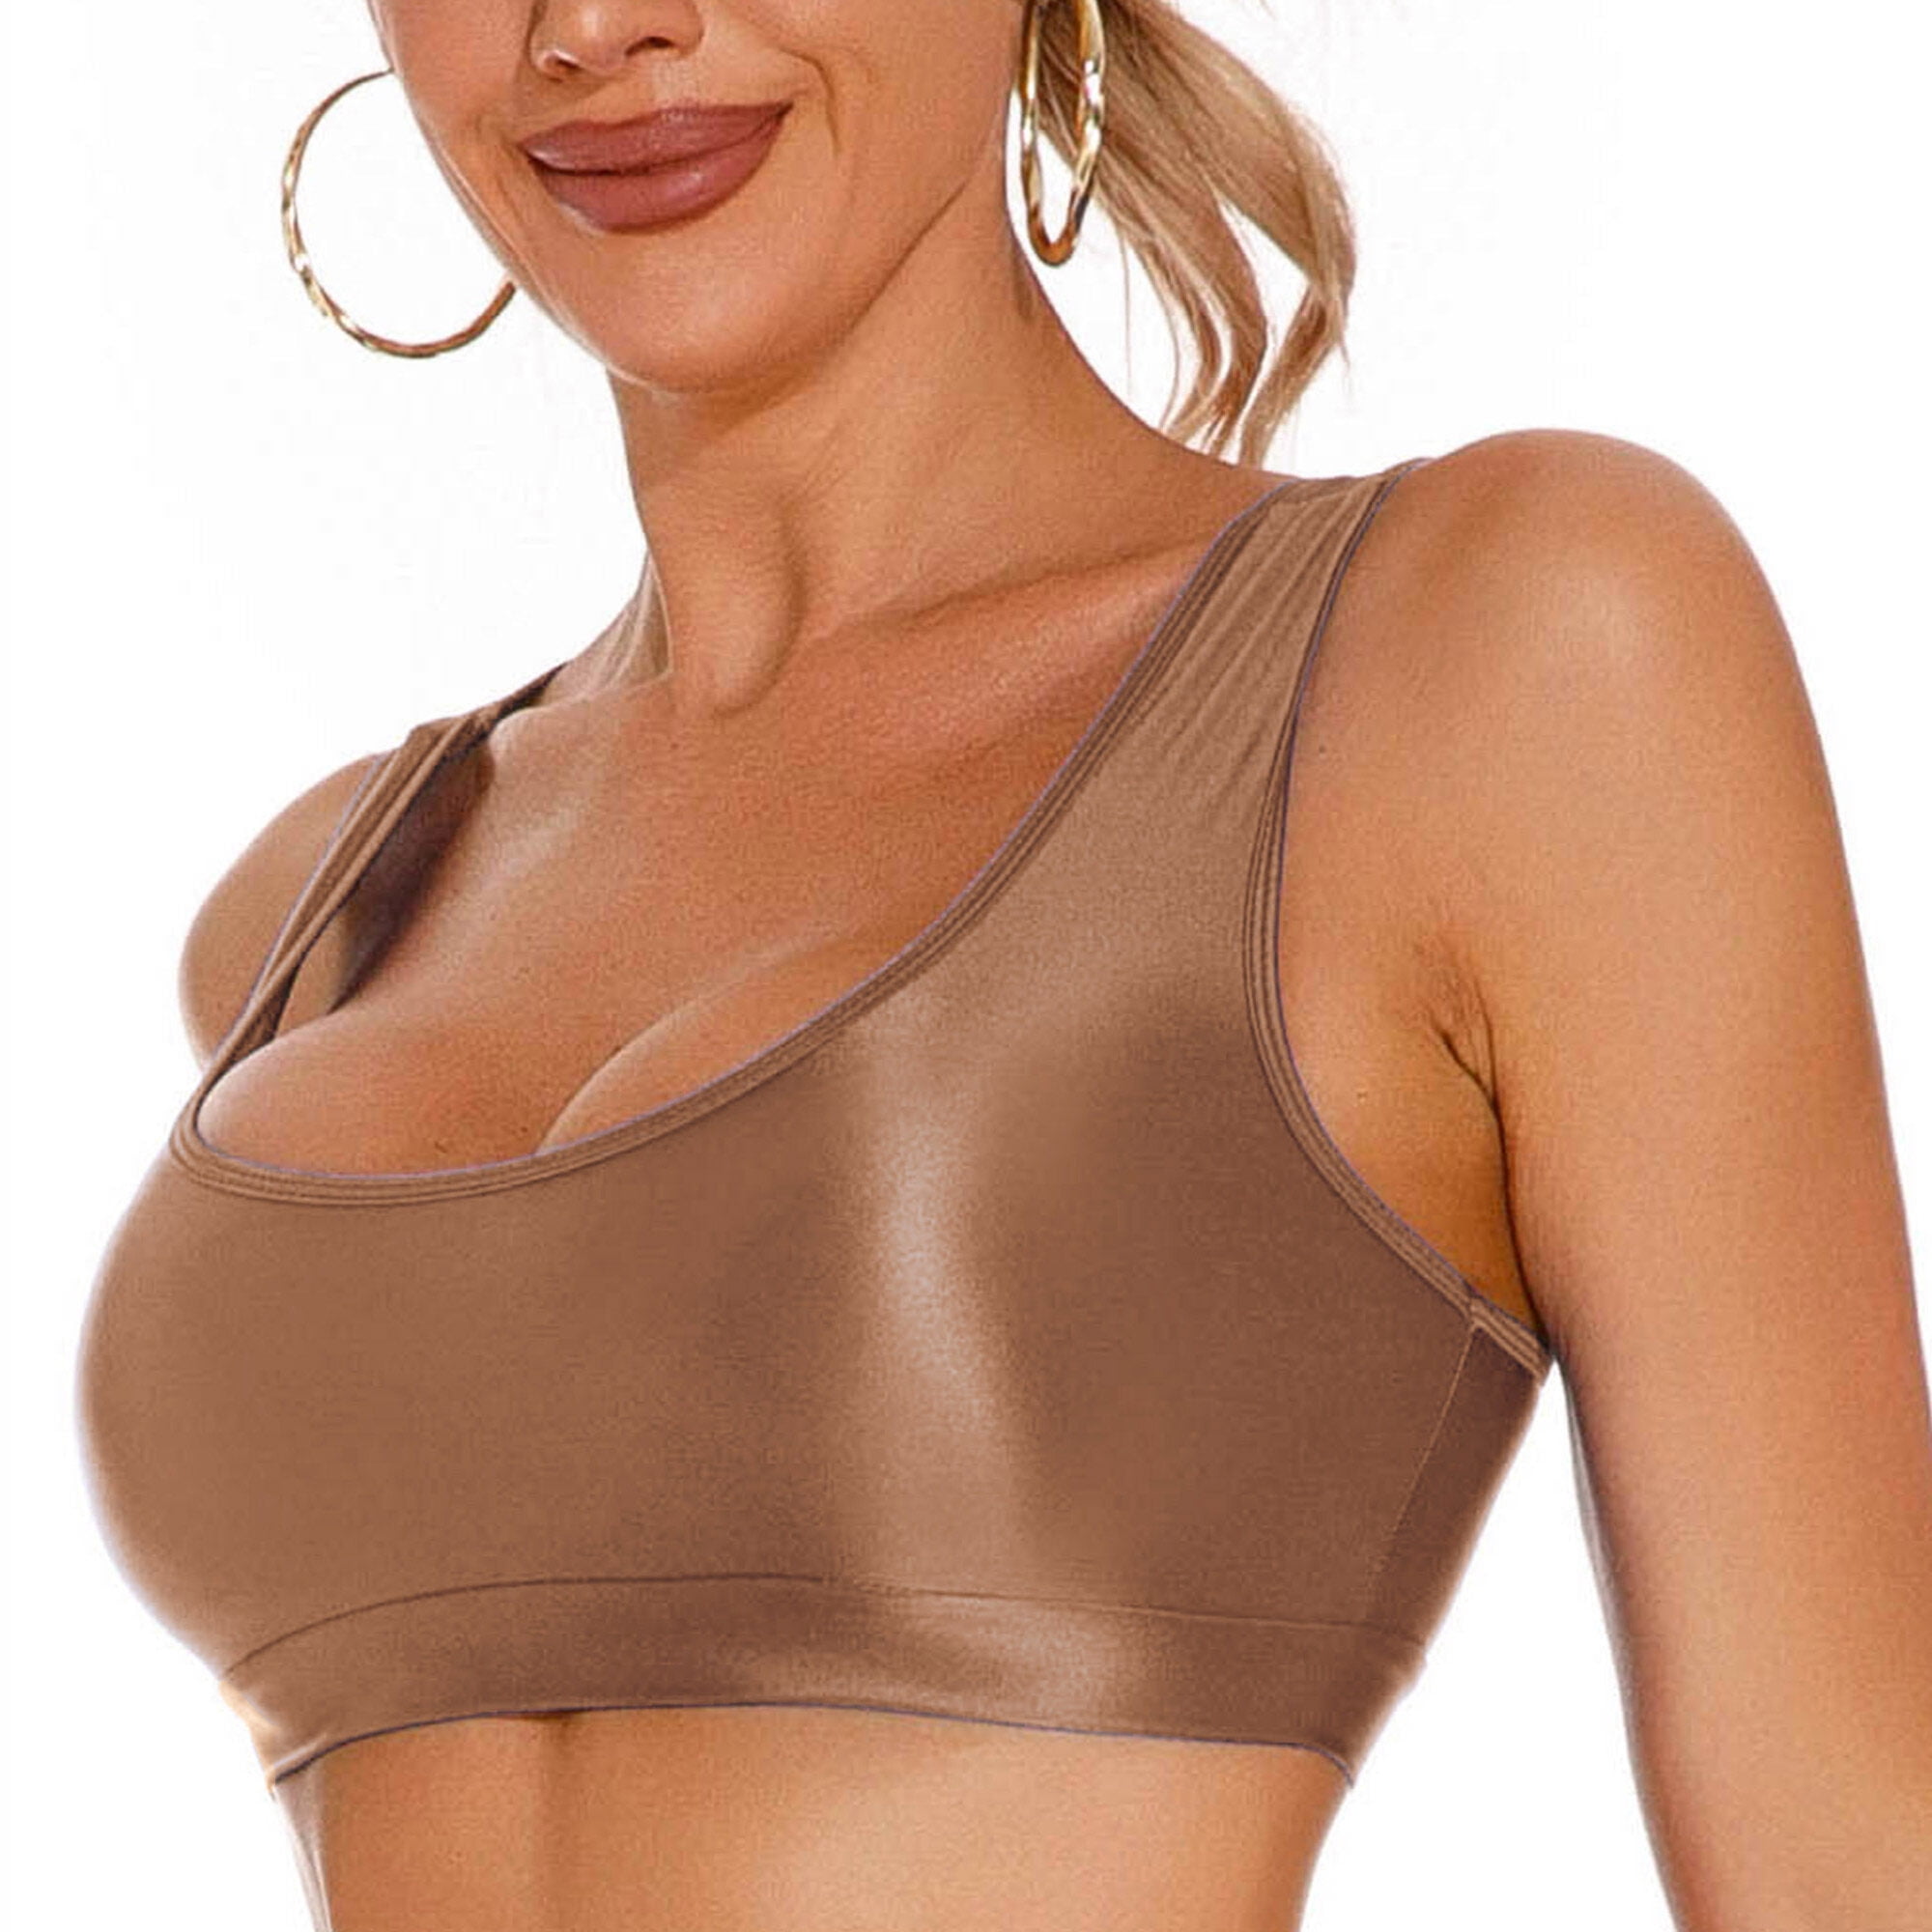 Buy buzhi Women Yoga Tank Tops with Built in Bra Crop Sports Vests